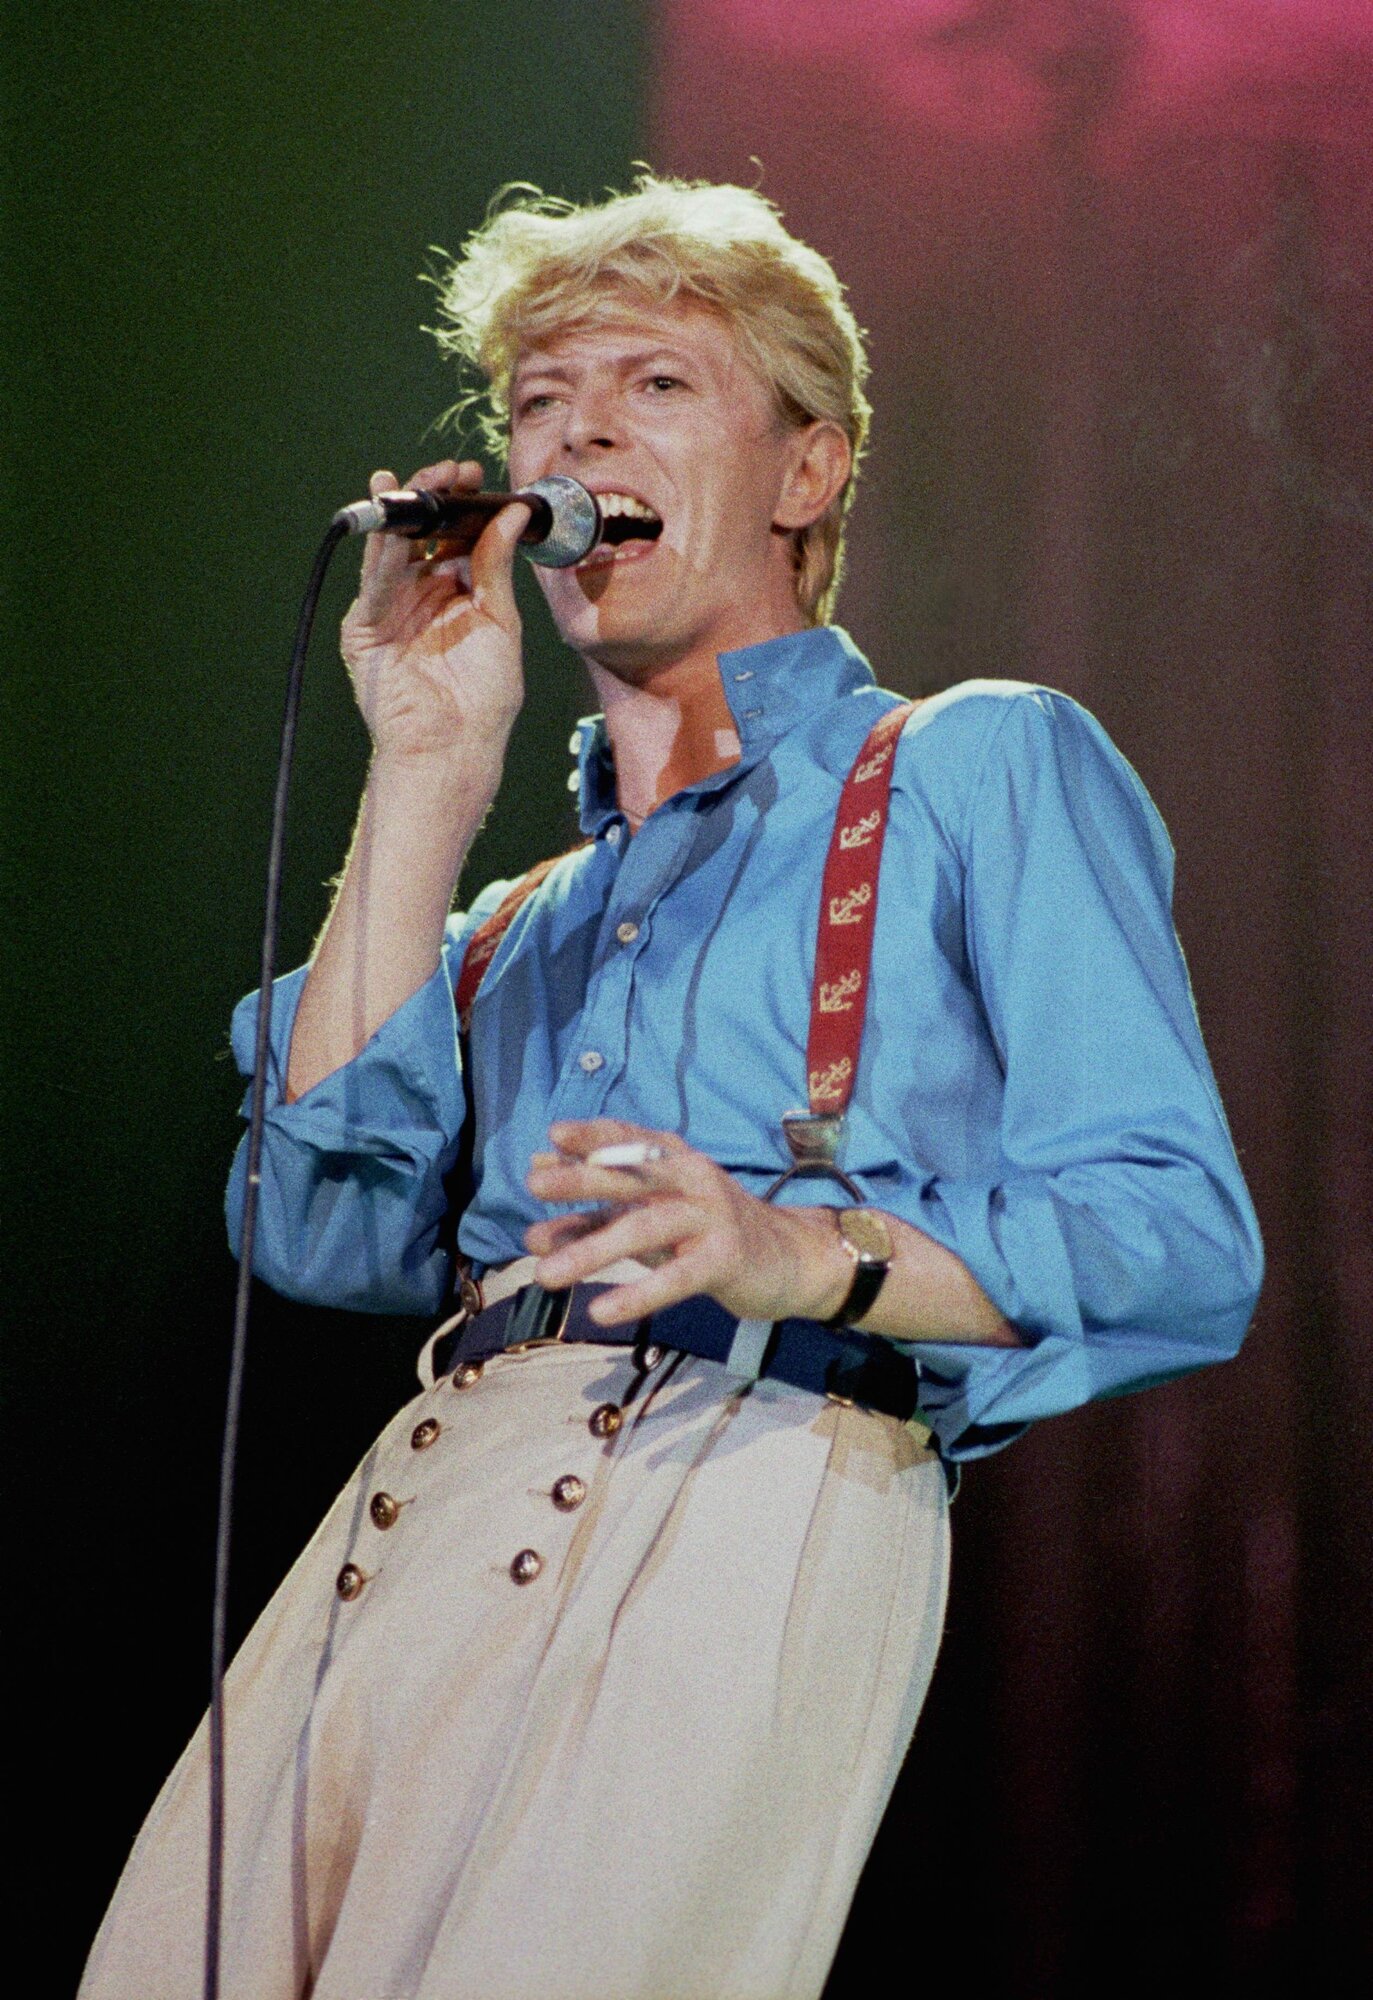 A folyamatosan változó megjelenéséről és hangzásvilágáról ismert David Bowie 1947. január 8-án született David Robert Jones néven a dél-londoni Brixtonban, Angliában. A rocksztár David Bowie első slágere a Space Oddity című dal volt 1969-ben. Az eredeti pop-kaméleon, Bowie a Ziggy Stardust című, áttörést hozó albumán fantasztikus sci-fi karakterré változott. Később Carlos Alomarral és John Lennonnal közösen írta a "Fame" című dalt, amely 1975-ben az első amerikai listavezető kislemez lett. Bowie kitűnő színész volt, 1976-ban szerepelt a The Man Who Fell to Earth című filmben. 1996-ban felvették a Rock and Roll Hall of Fame-be. Nem sokkal utolsó albumának kiadása után, 2016. január 10-én Bowie rákban elhunyt.